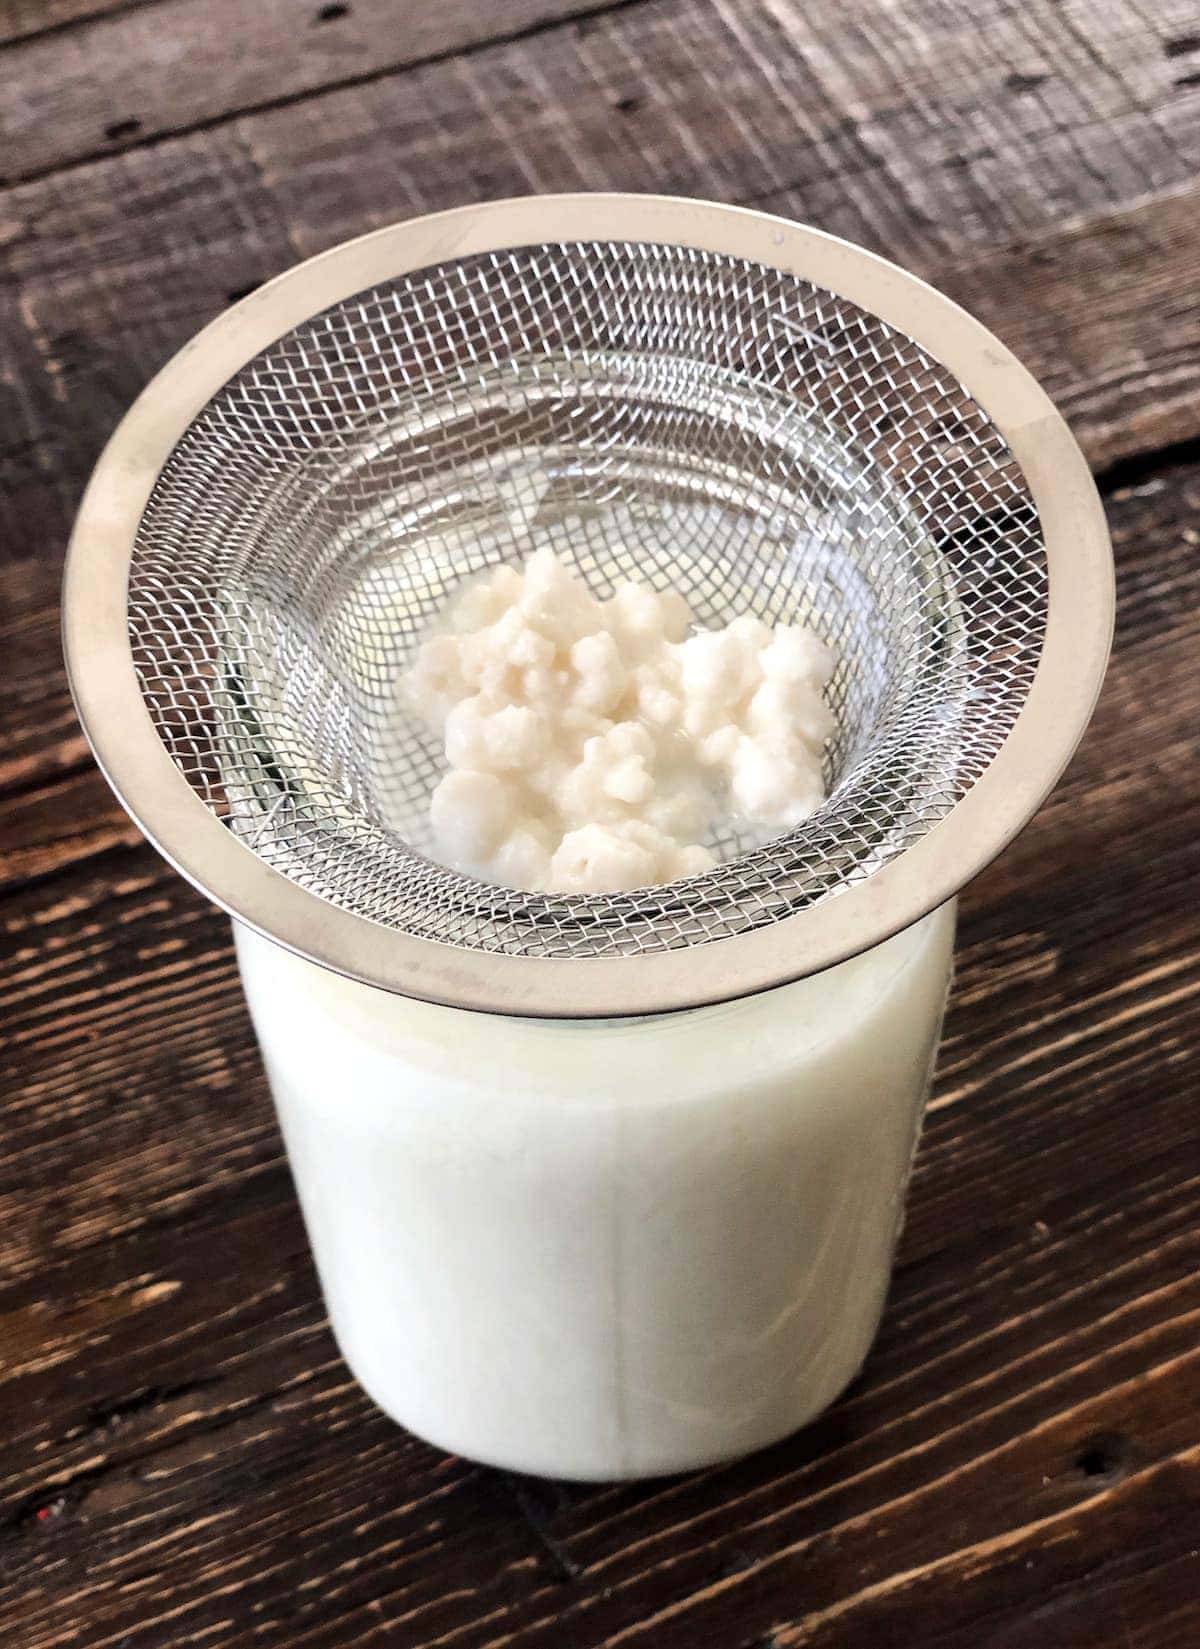 How To Make Milk Kefir (Easy Tutorial!)